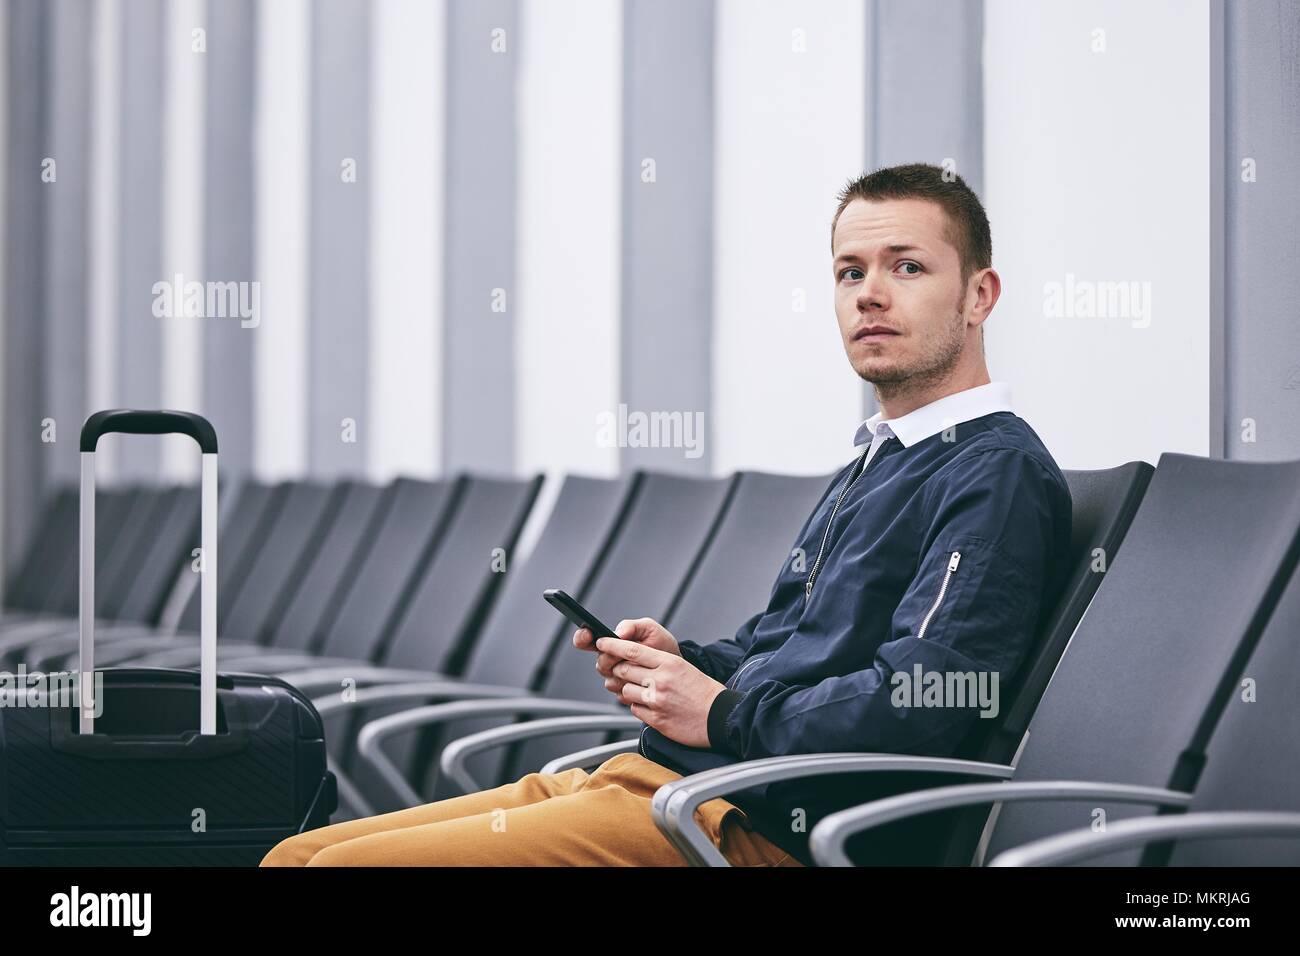 Mann mit dem Flugzeug reisen. Junge Passagier im Terminal warten. Stockfoto